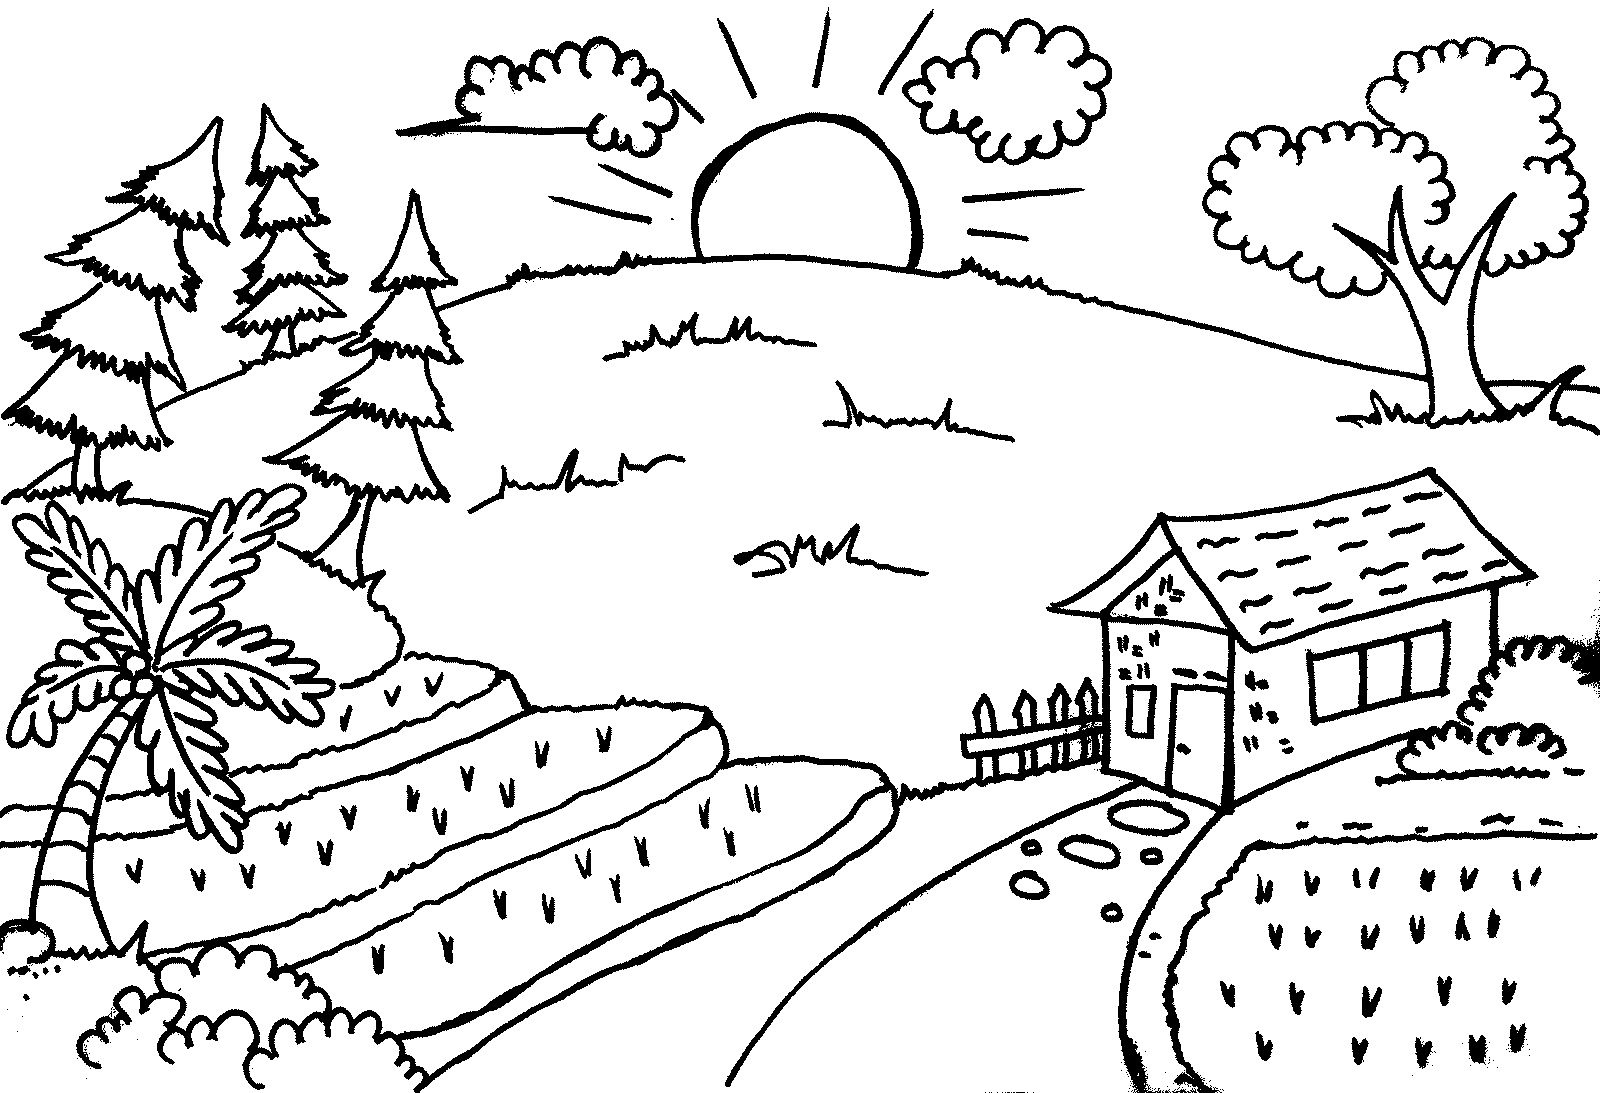 Gambar Sketsa Untuk Mewarnai Anak SD kelas 3 - enolink